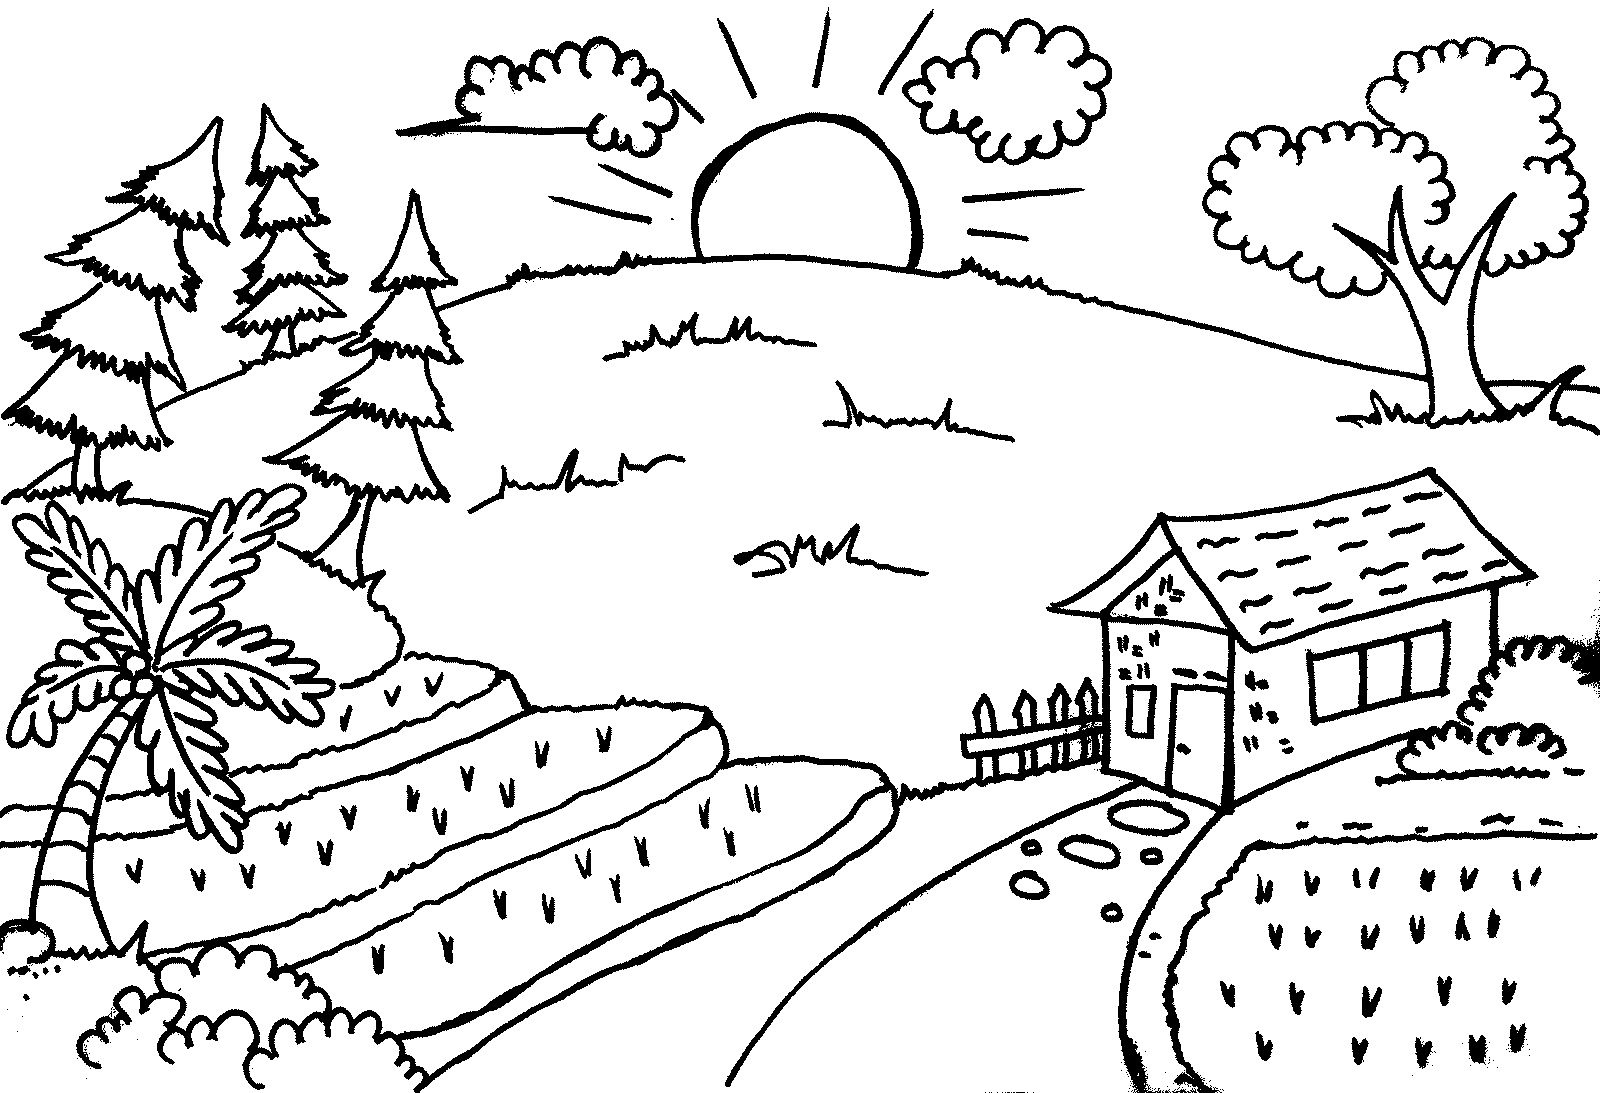 Gambar Sketsa Untuk Mewarnai Anak SD kelas 3 - enolink